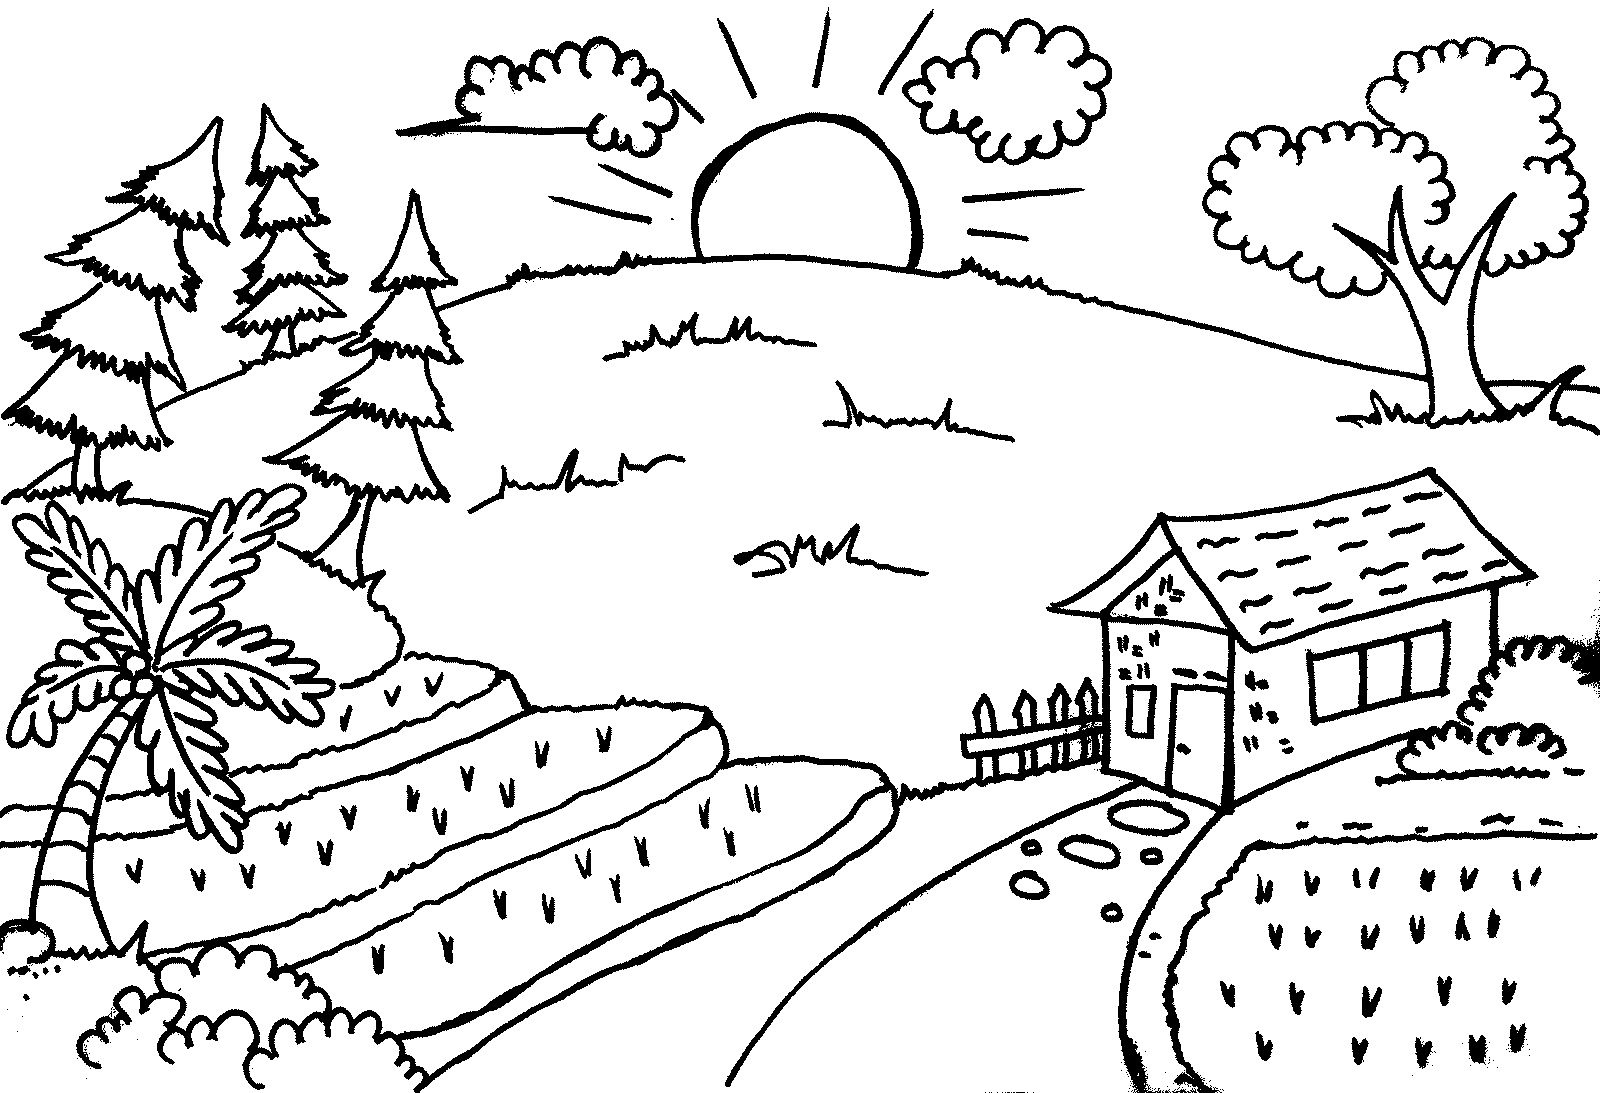 Gambar Sketsa Untuk Mewarnai Anak SD kelas 3 - enolink